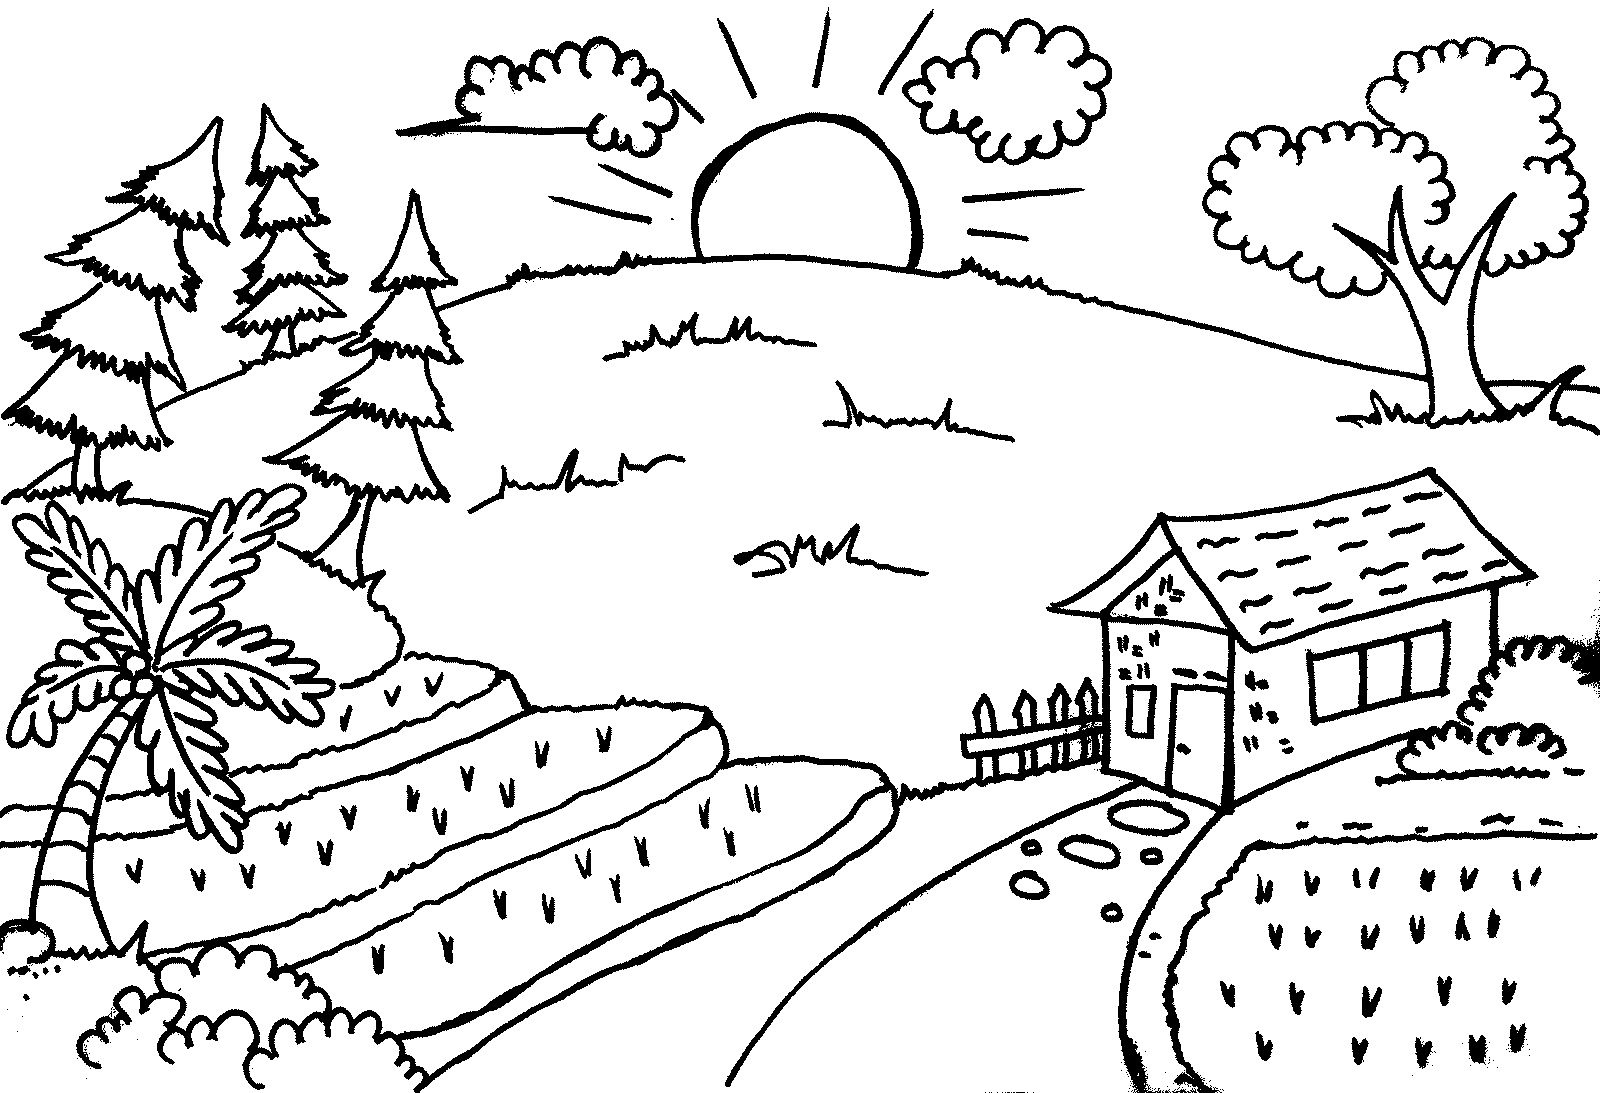 Gambar Sketsa Untuk Mewarnai Anak SD kelas 3 - enolink